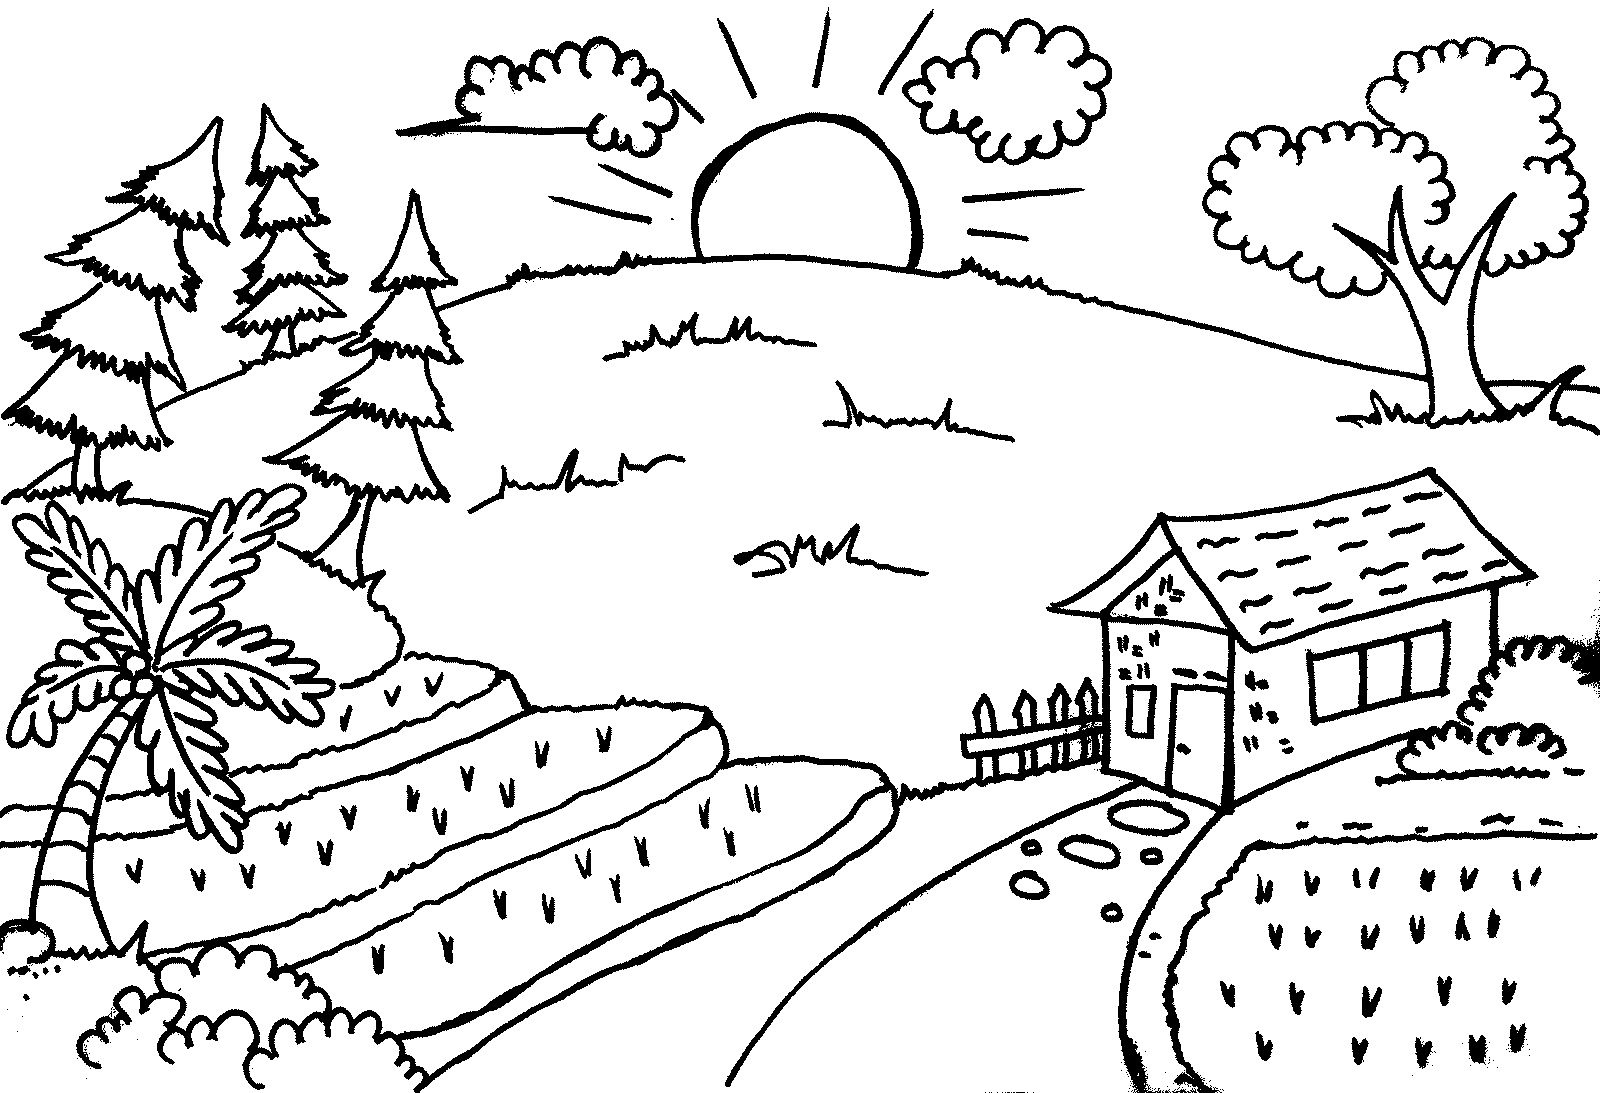 Gambar Sketsa Untuk Mewarnai Anak SD kelas 3 - enolink